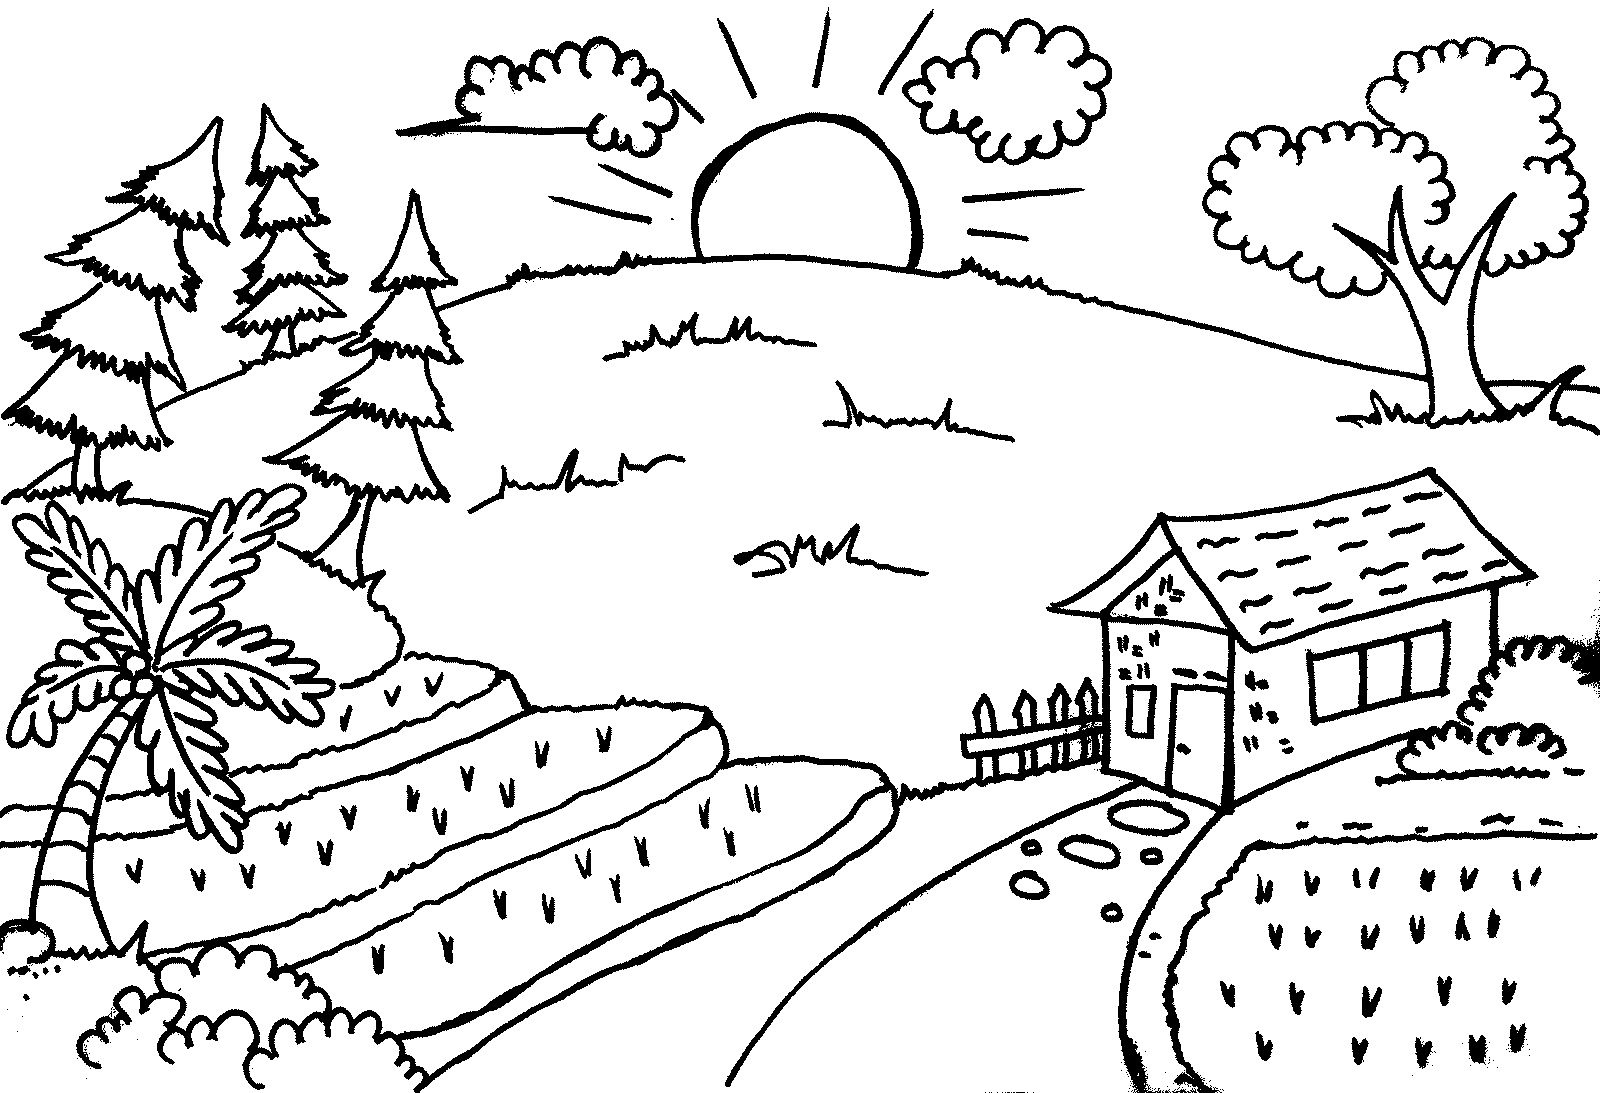 Gambar Sketsa Untuk Mewarnai Anak SD kelas 3 - enolink